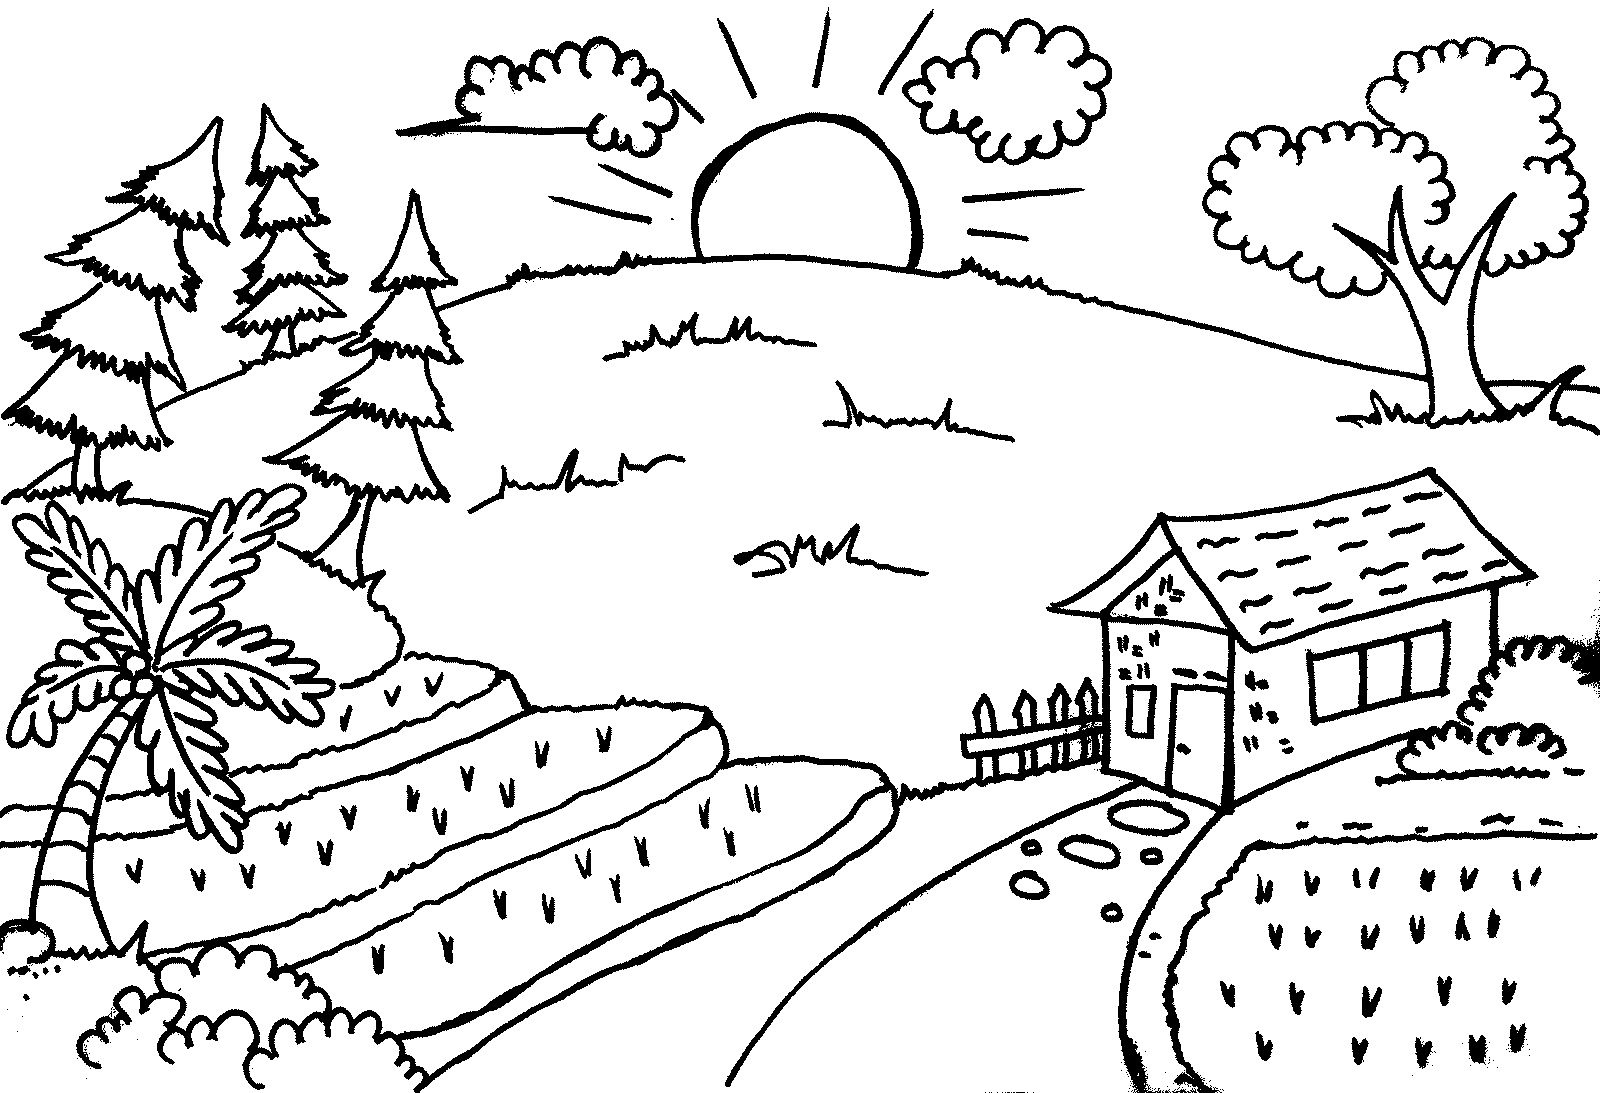 Gambar Sketsa Untuk Mewarnai Anak SD kelas 3 - enolink